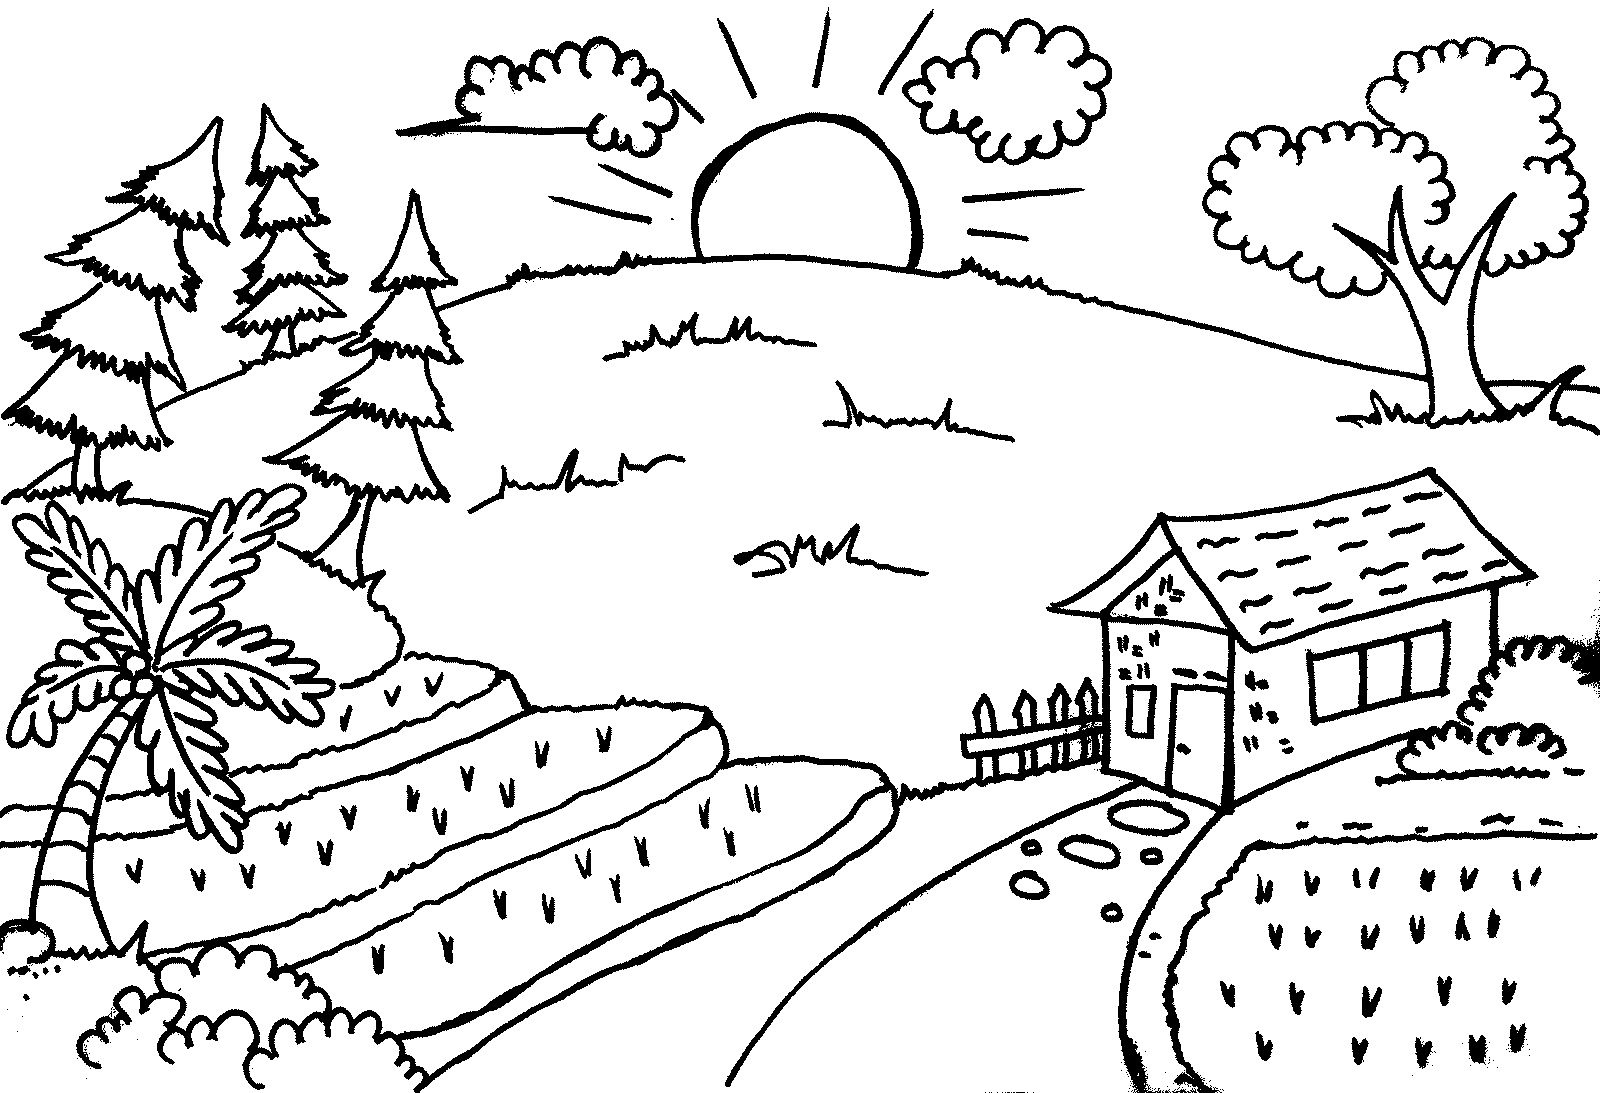 Gambar Sketsa Untuk Mewarnai Anak SD kelas 3 - enolink